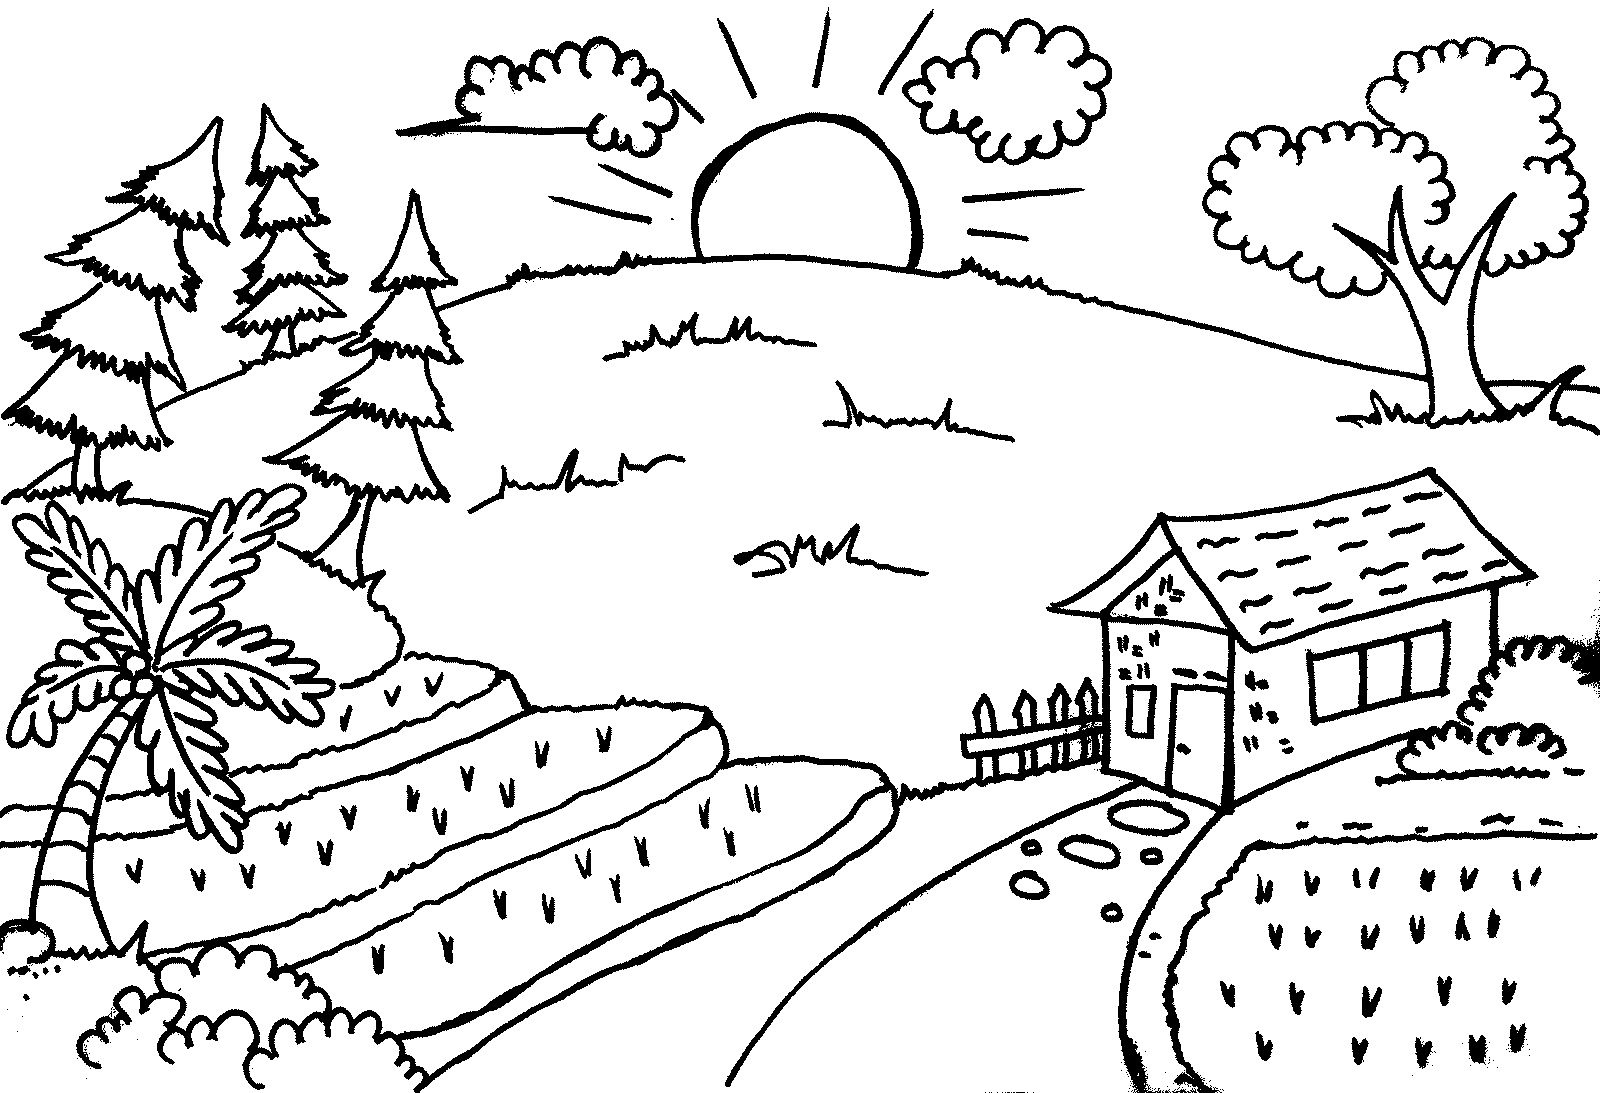 Gambar Sketsa Untuk Mewarnai Anak SD kelas 3 - enolink